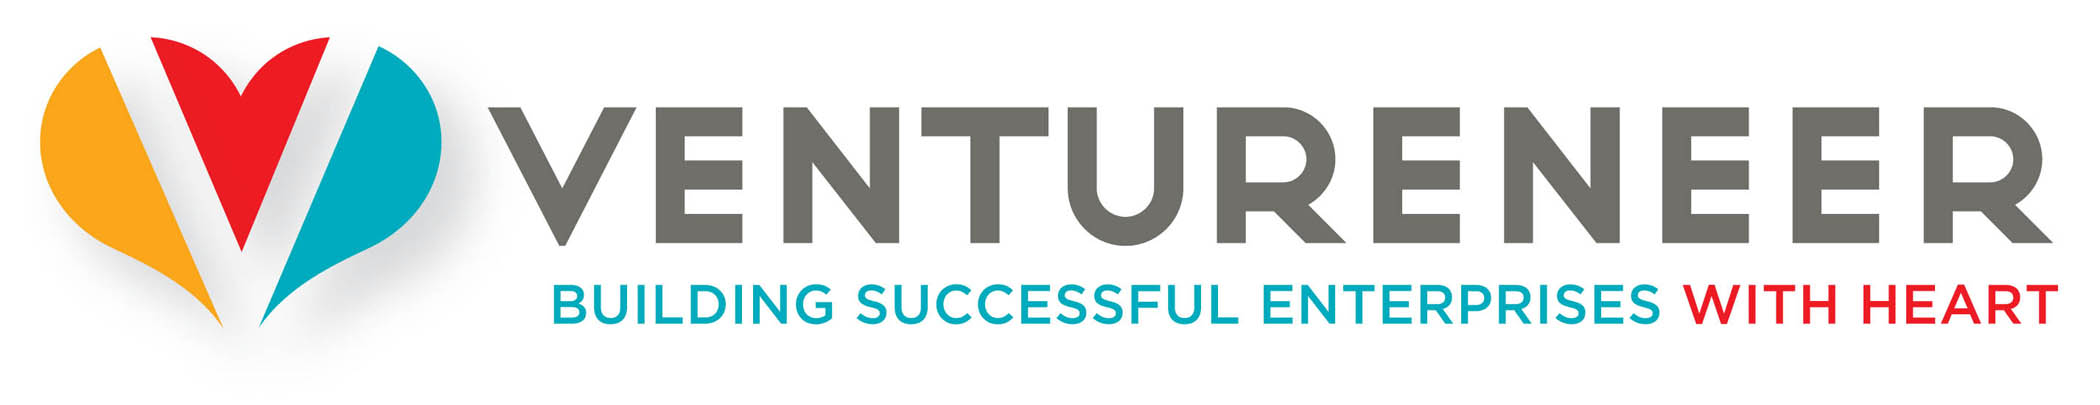 Ventureneer logo